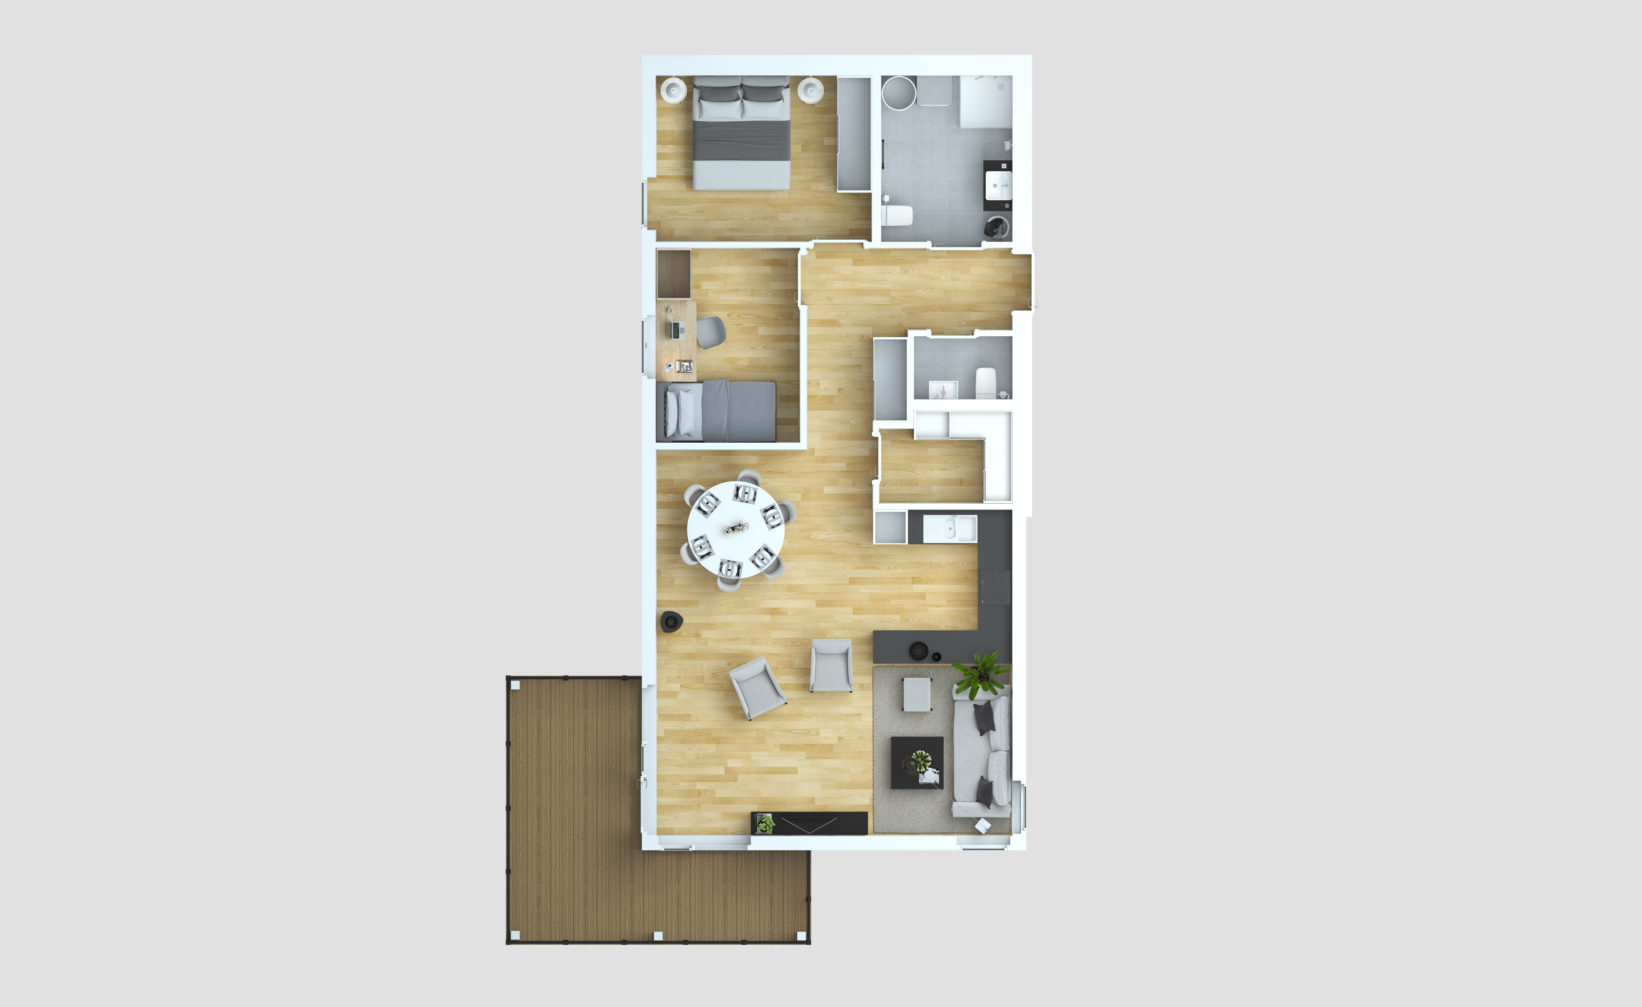 En planløsning av en to-roms leilighet designet for å visualisere salgsformål av selskapet Opthimal i 2016.